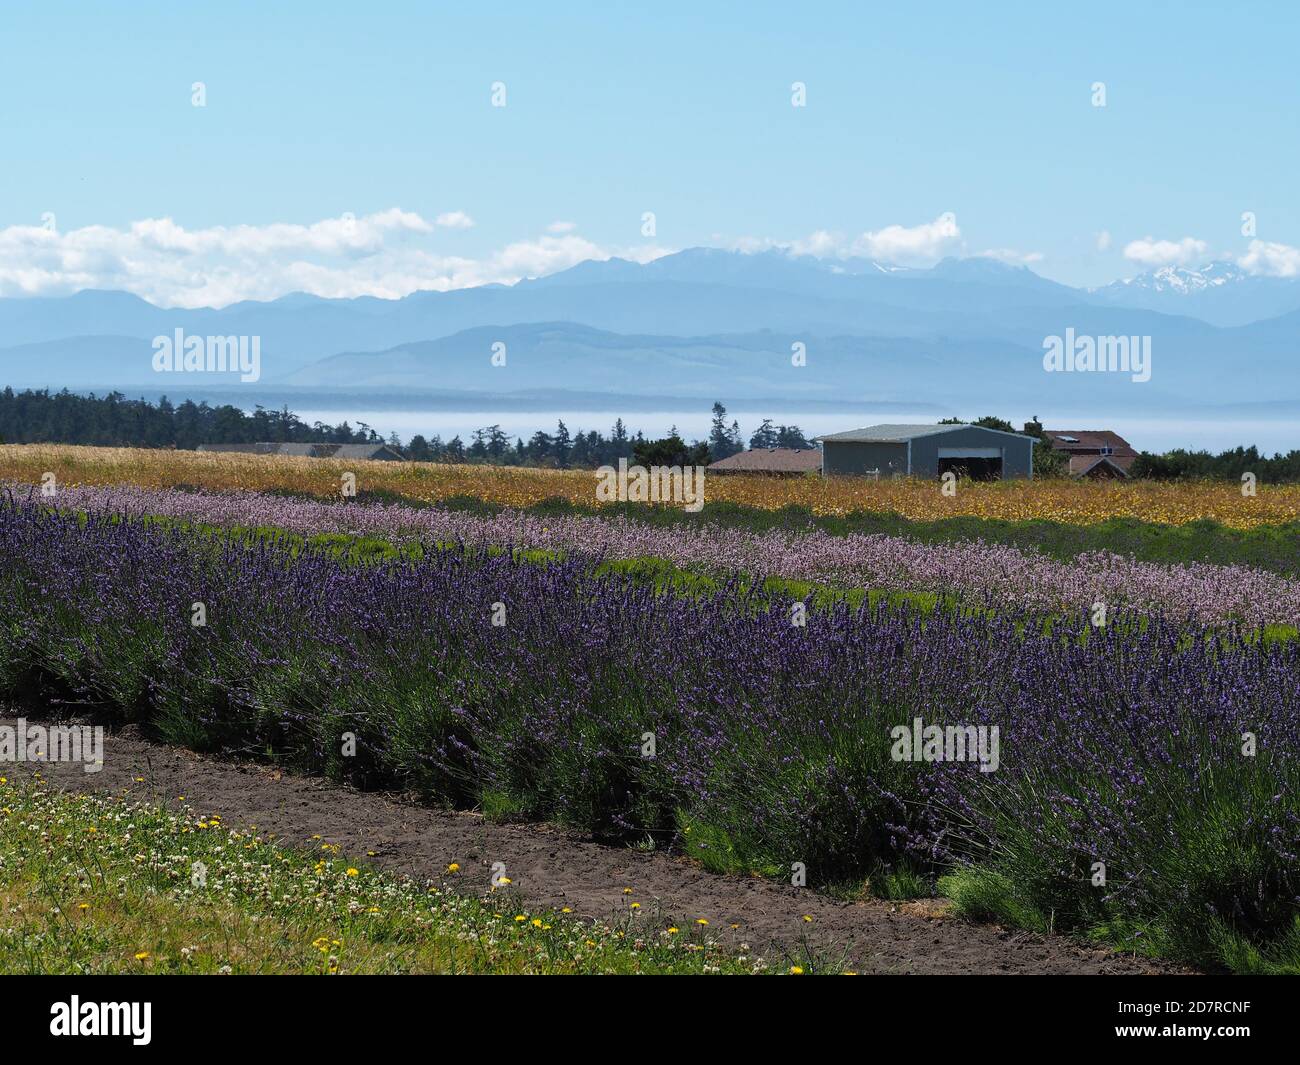 Lavender farm in Washington state, USA Stock Photo